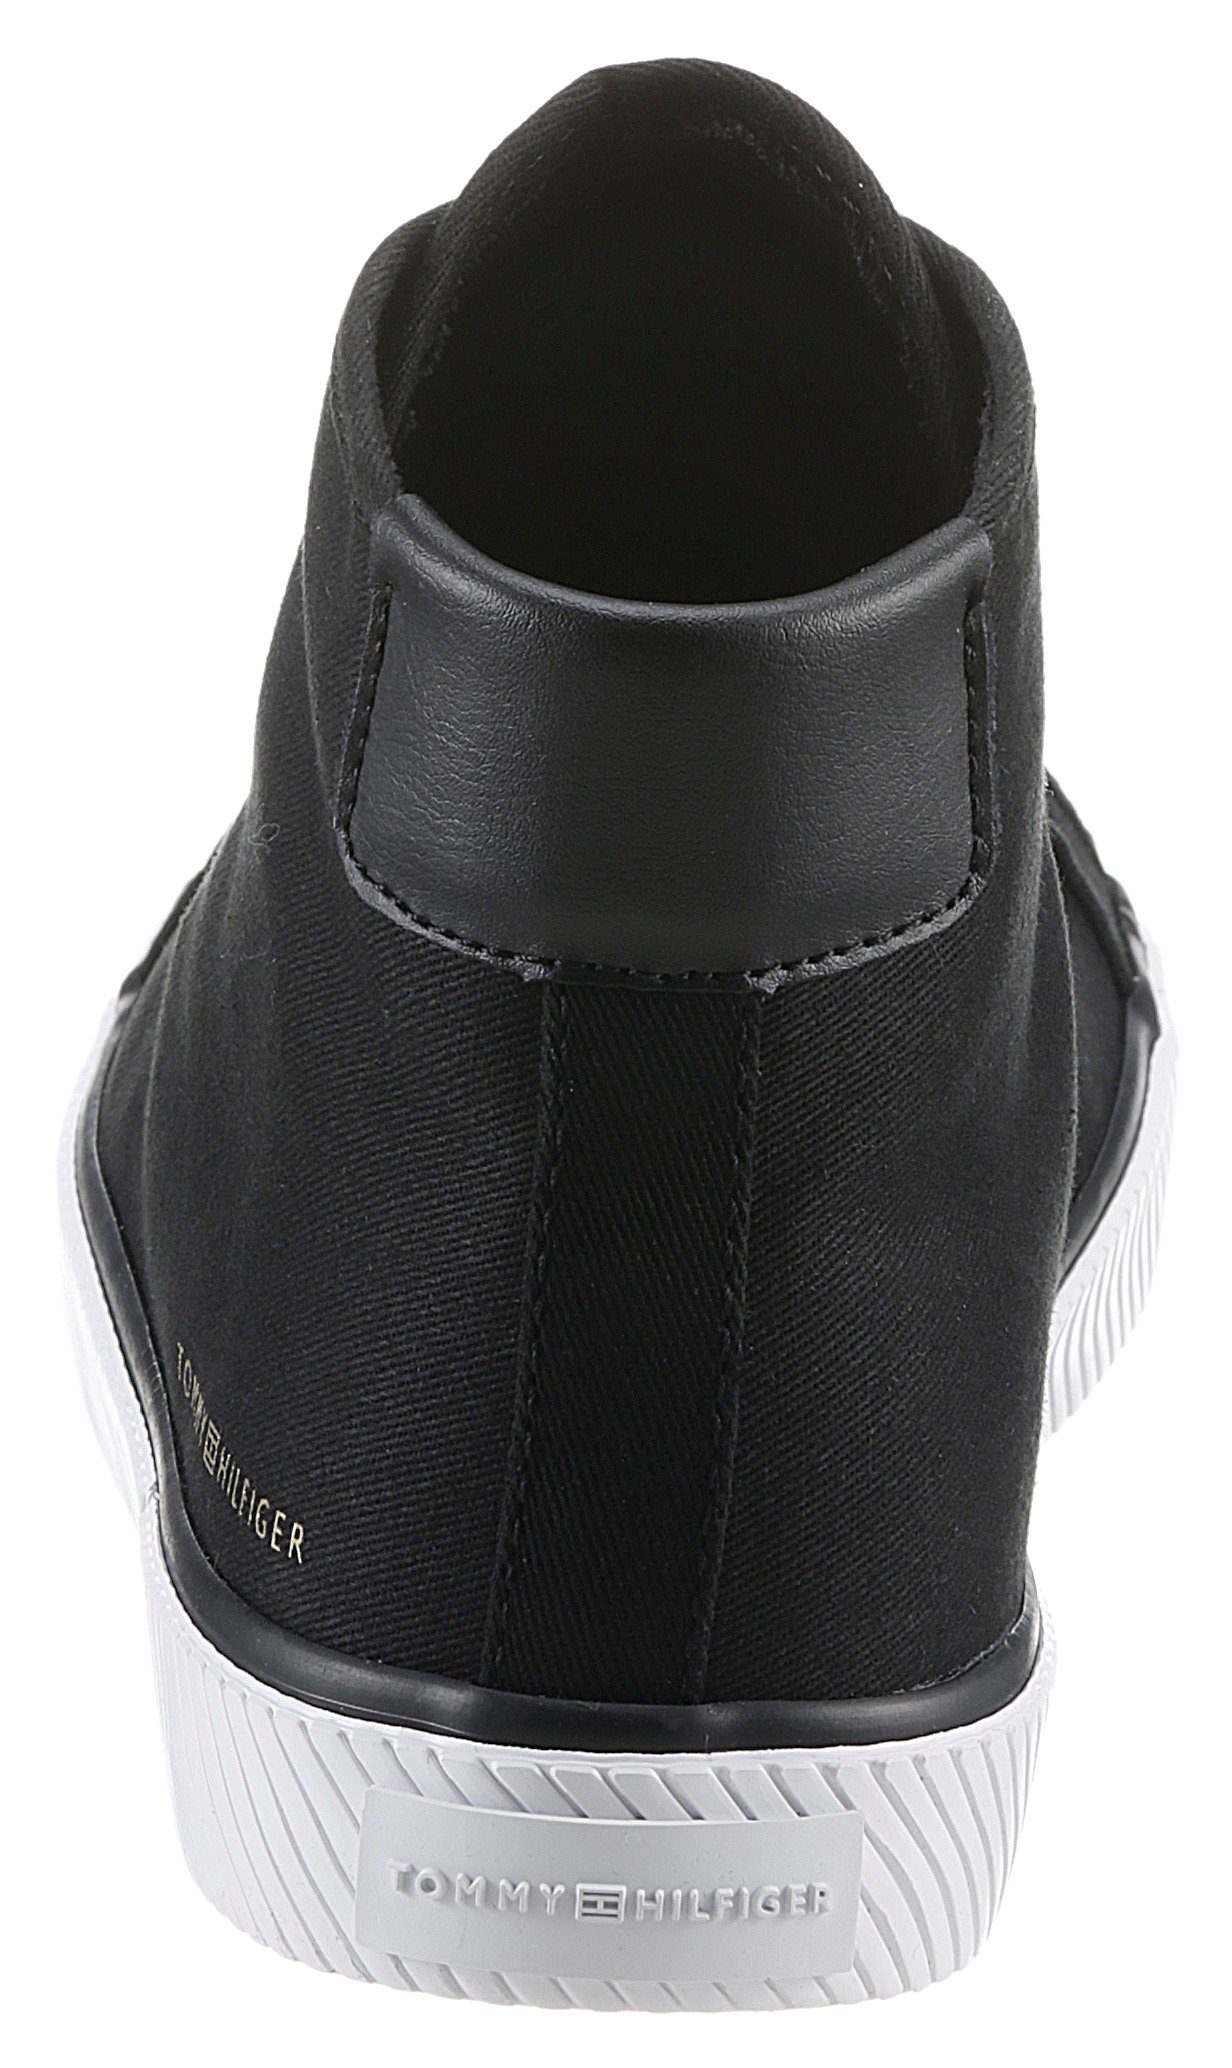 HIGHCUT Sneaker Tommy Hilfiger ESSENTIAL Design mit zeitlosem SNEAKER BL